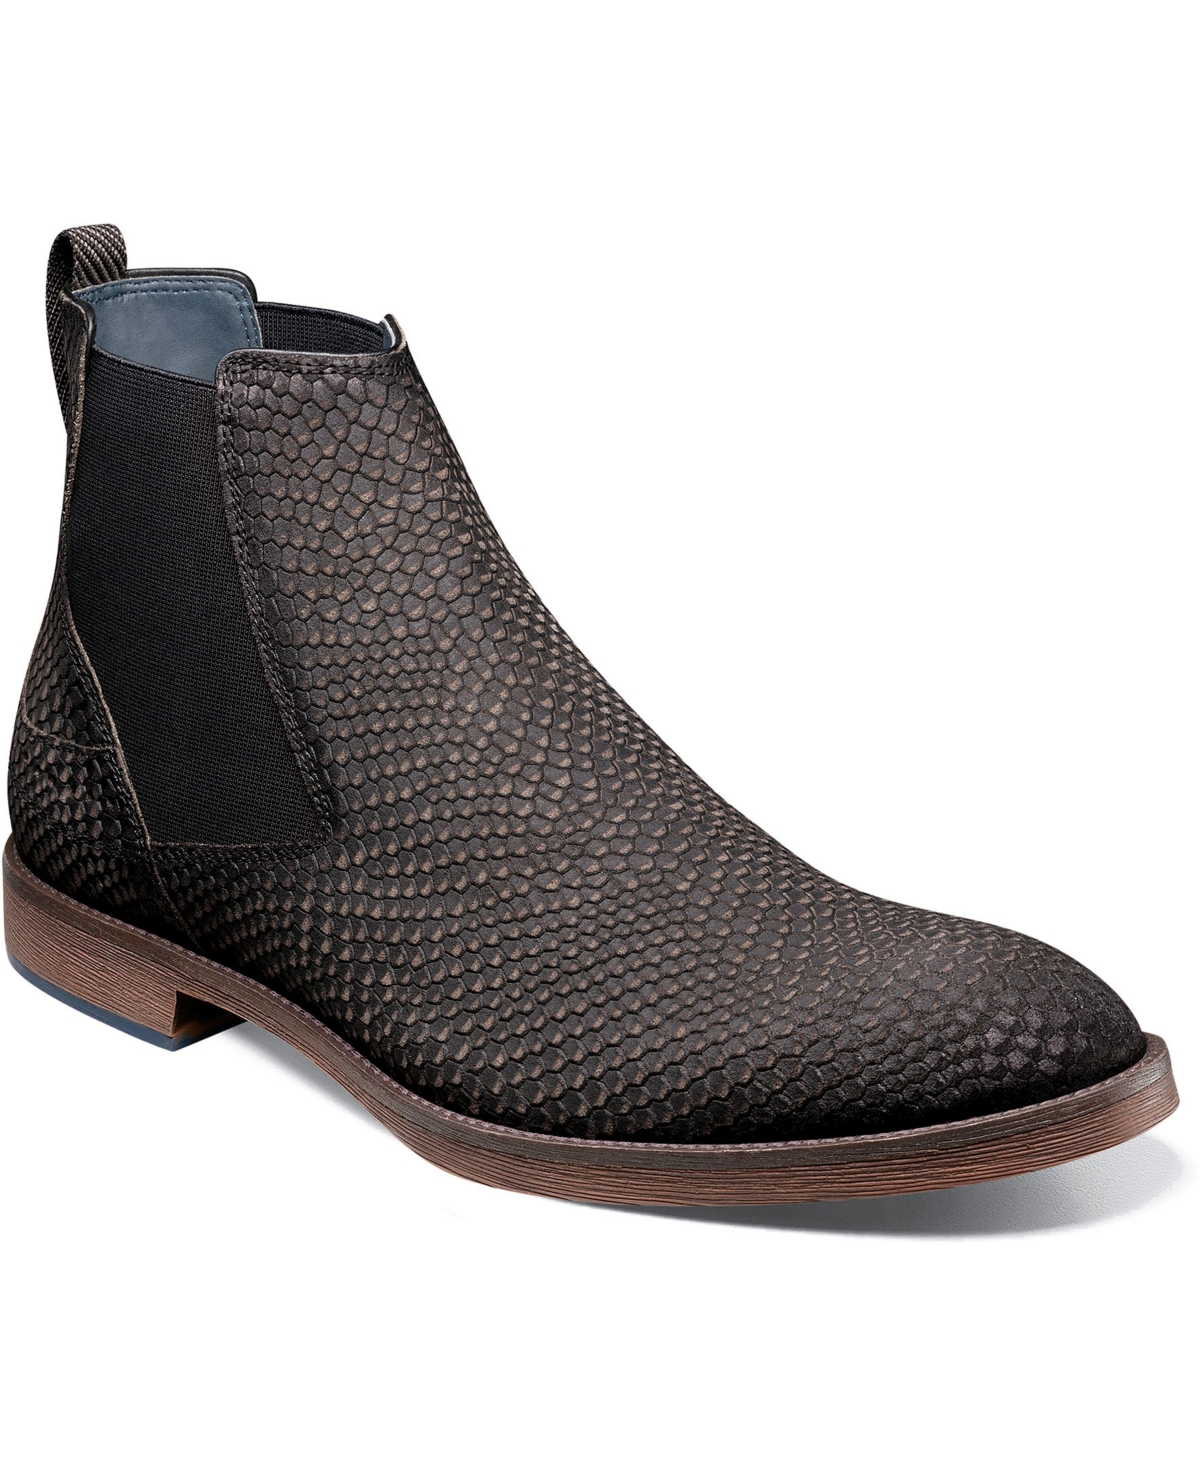 Stacy Adams Men's Kayden Plain Toe Chelsea Boots Men's Shoes In Black/gray